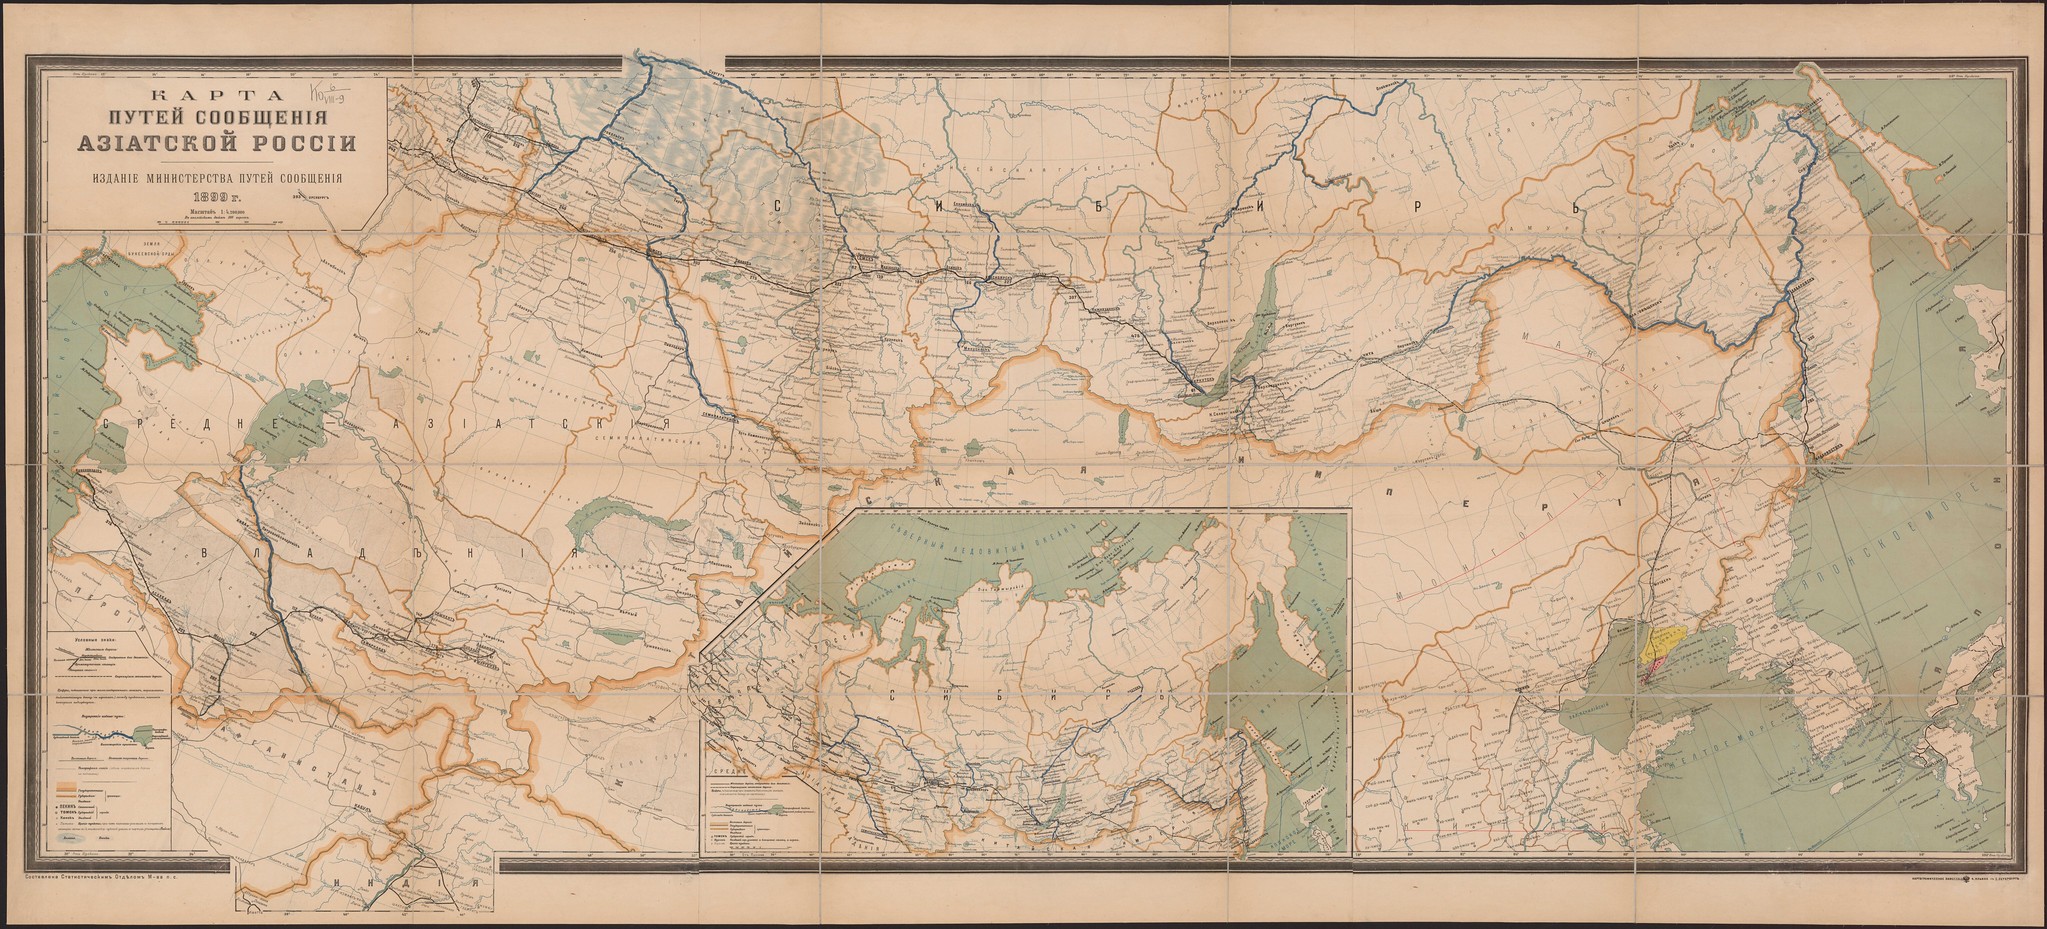 1899. Карта путей сообщения Азиатской России